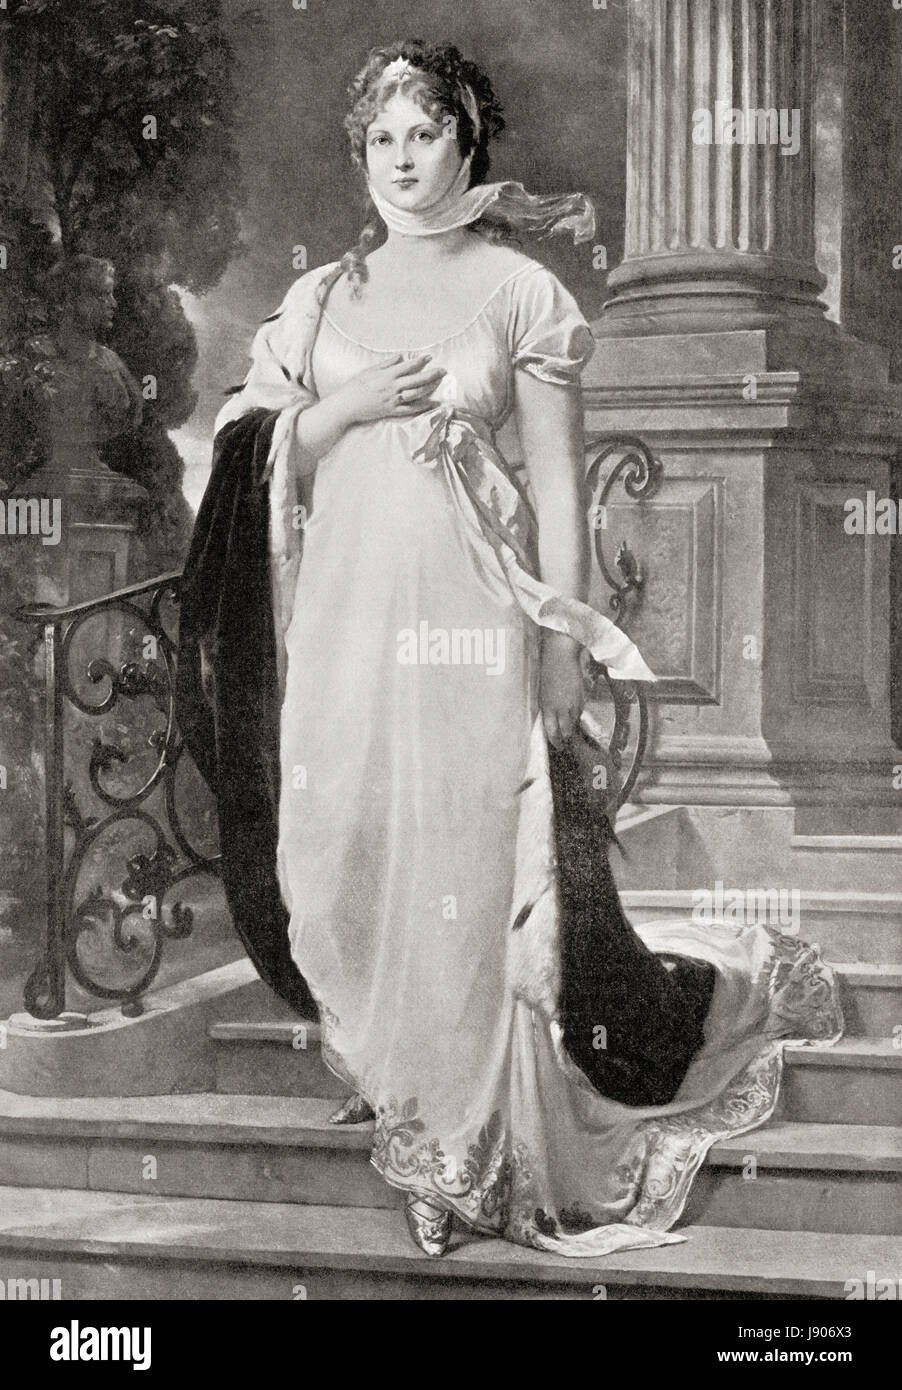 Duchesse Louise de Mecklembourg-strelitz, 1776 - 1810. Reine consort de Prusse comme l'épouse du roi Frédéric-guillaume III. L'histoire de Hutchinson de l'ONU, publié en 1915. Banque D'Images